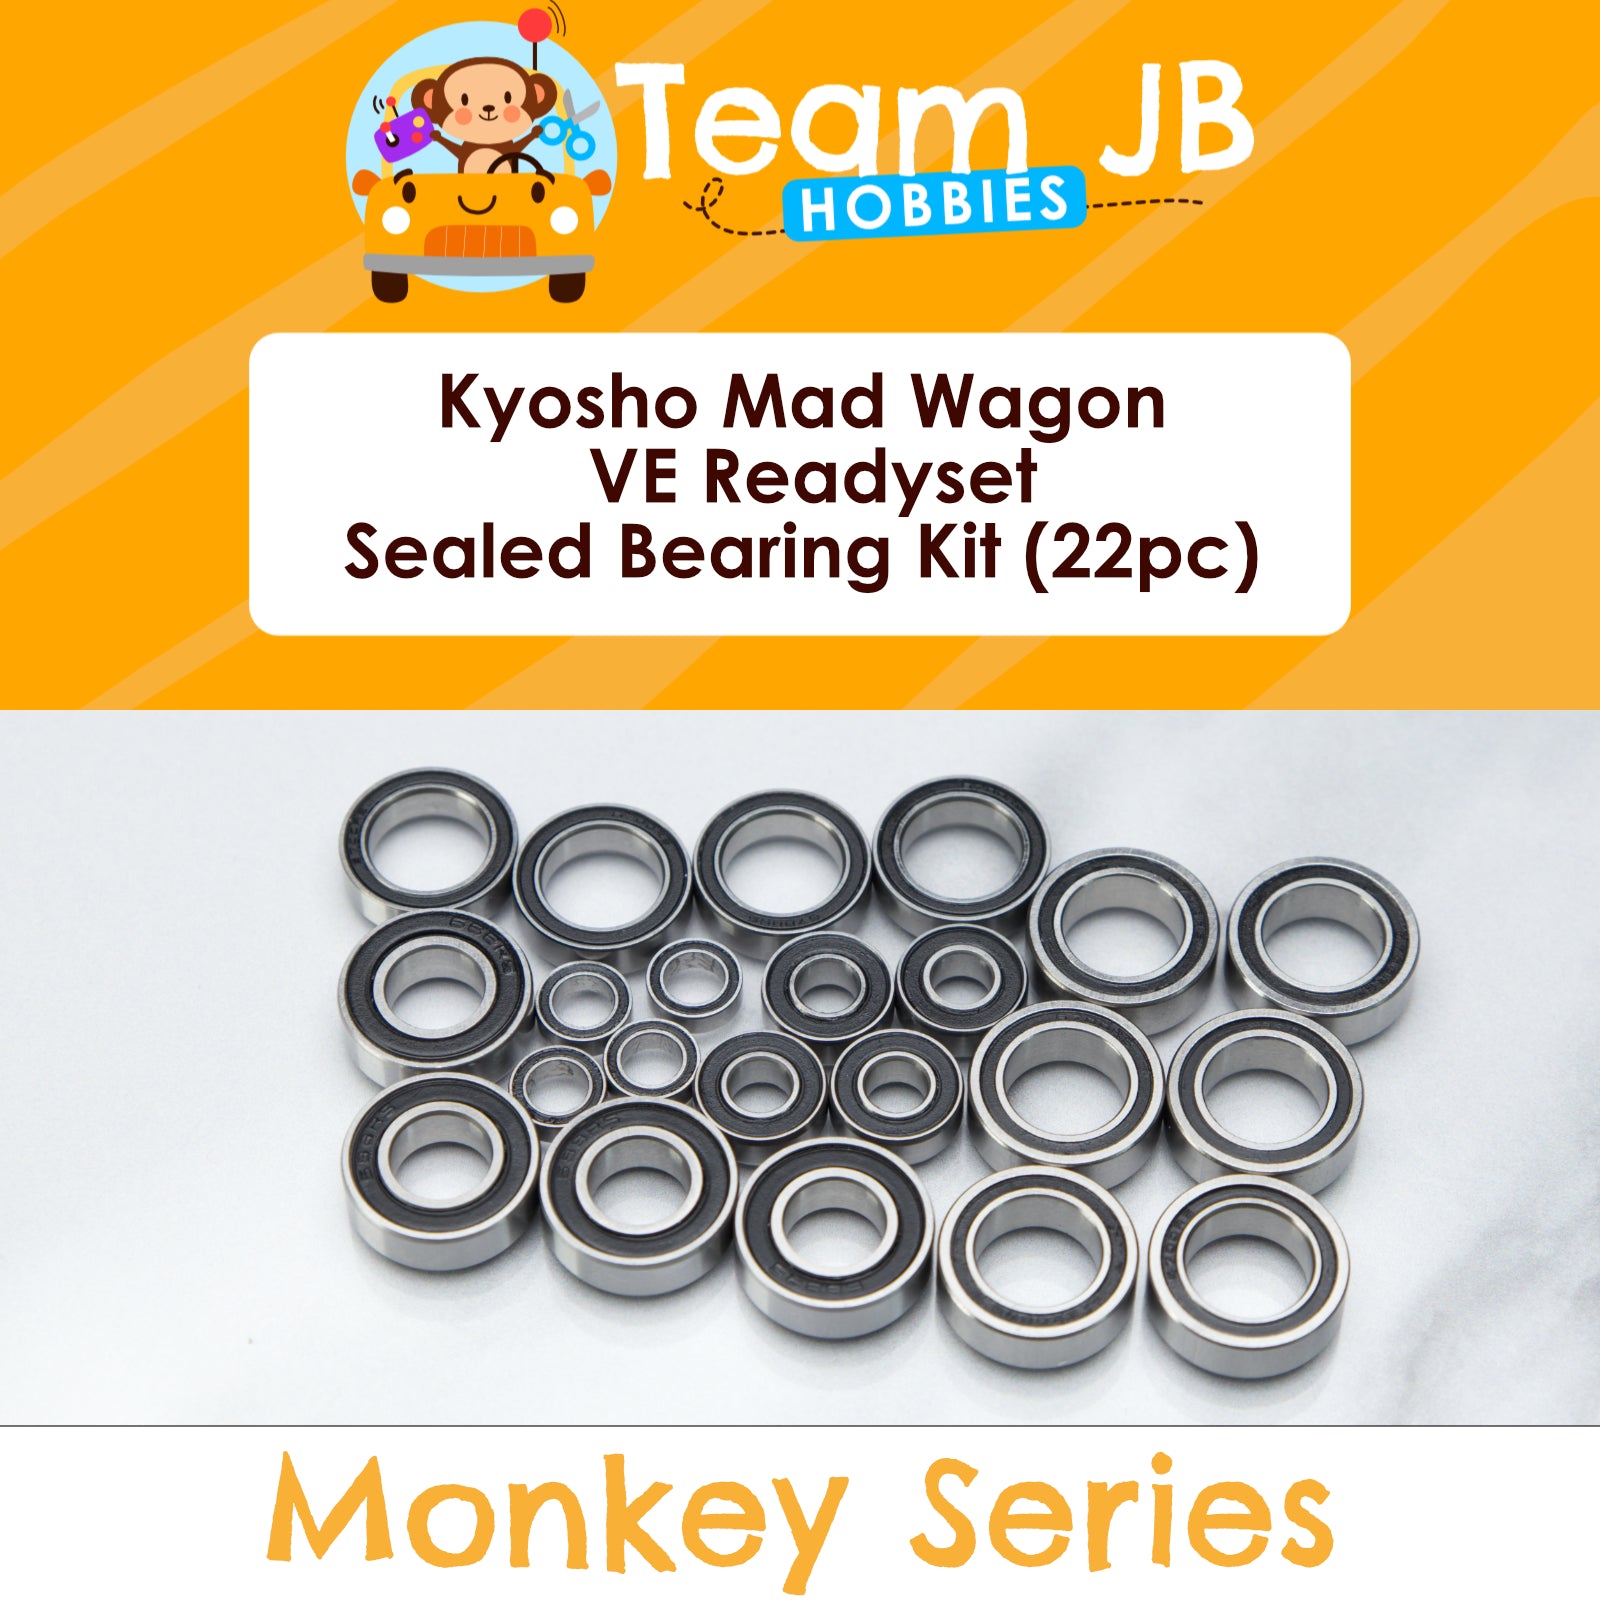 Kyosho Mad Wagon VE Readyset - Sealed Bearing Kit